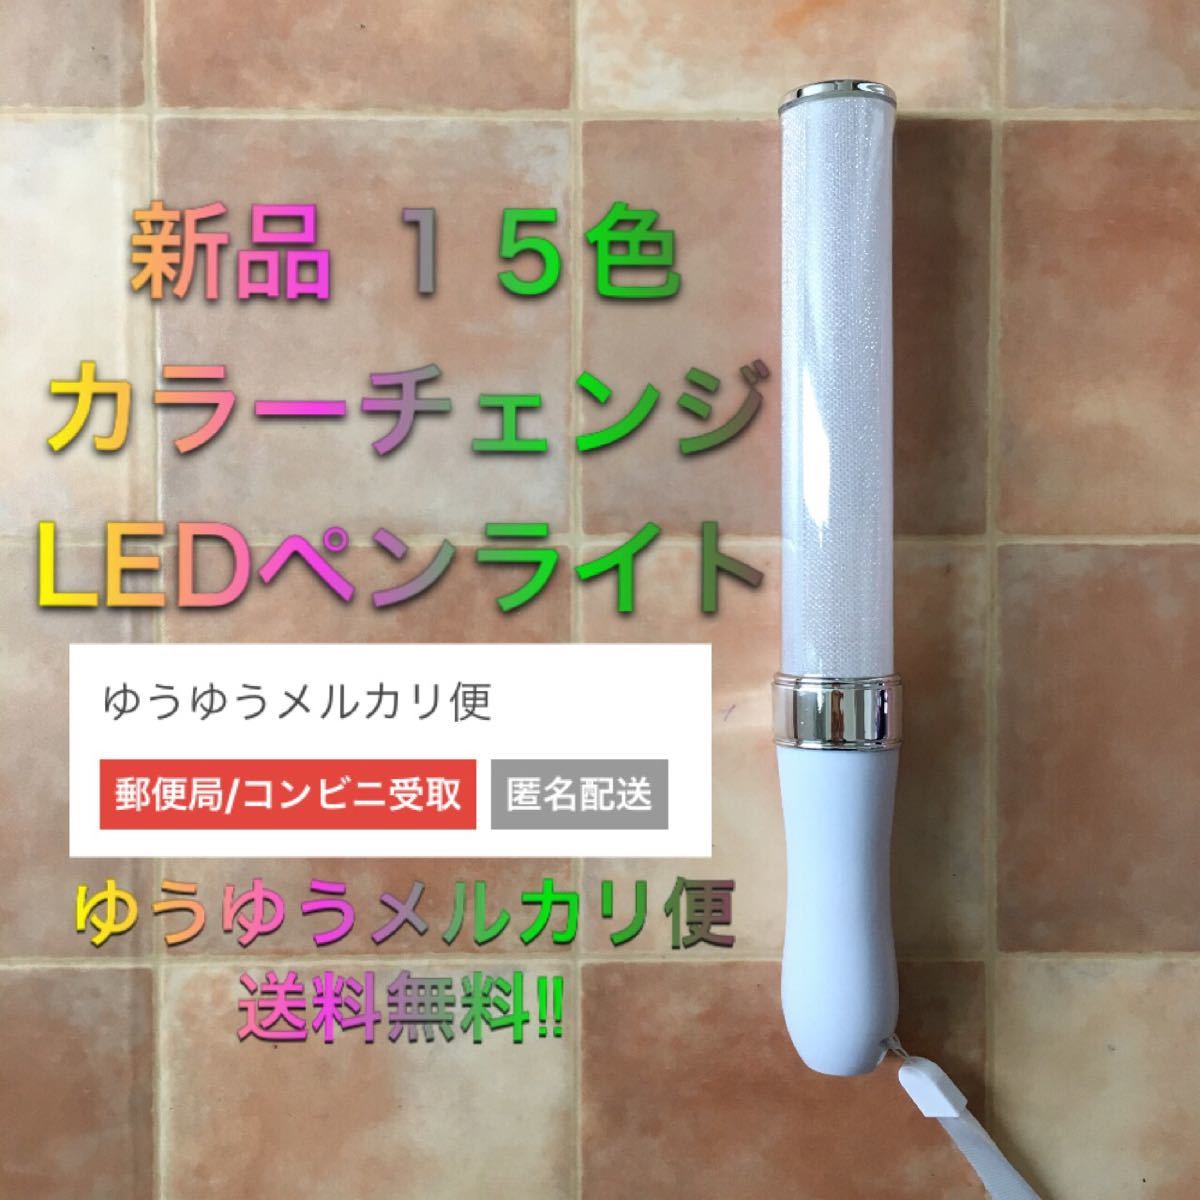 新品 LEDペンライト キンブレ アイドル 応援 ライブ コンサート